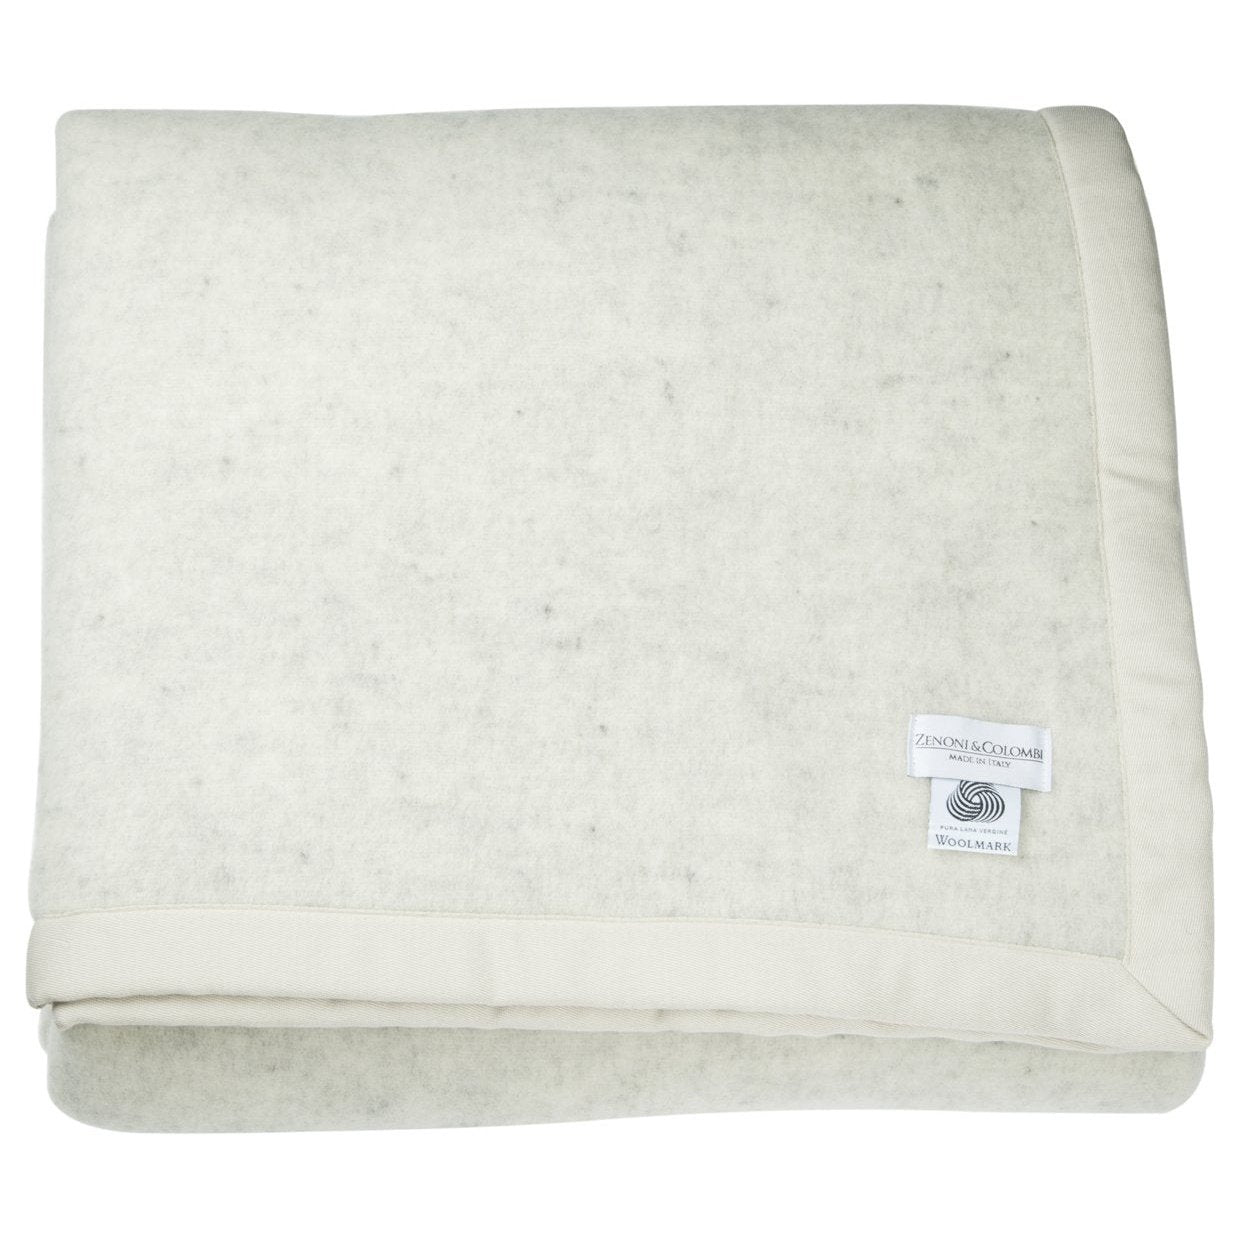 100% Pure Virgin Wool Lambswool (Woolmark) Blanket, Gray